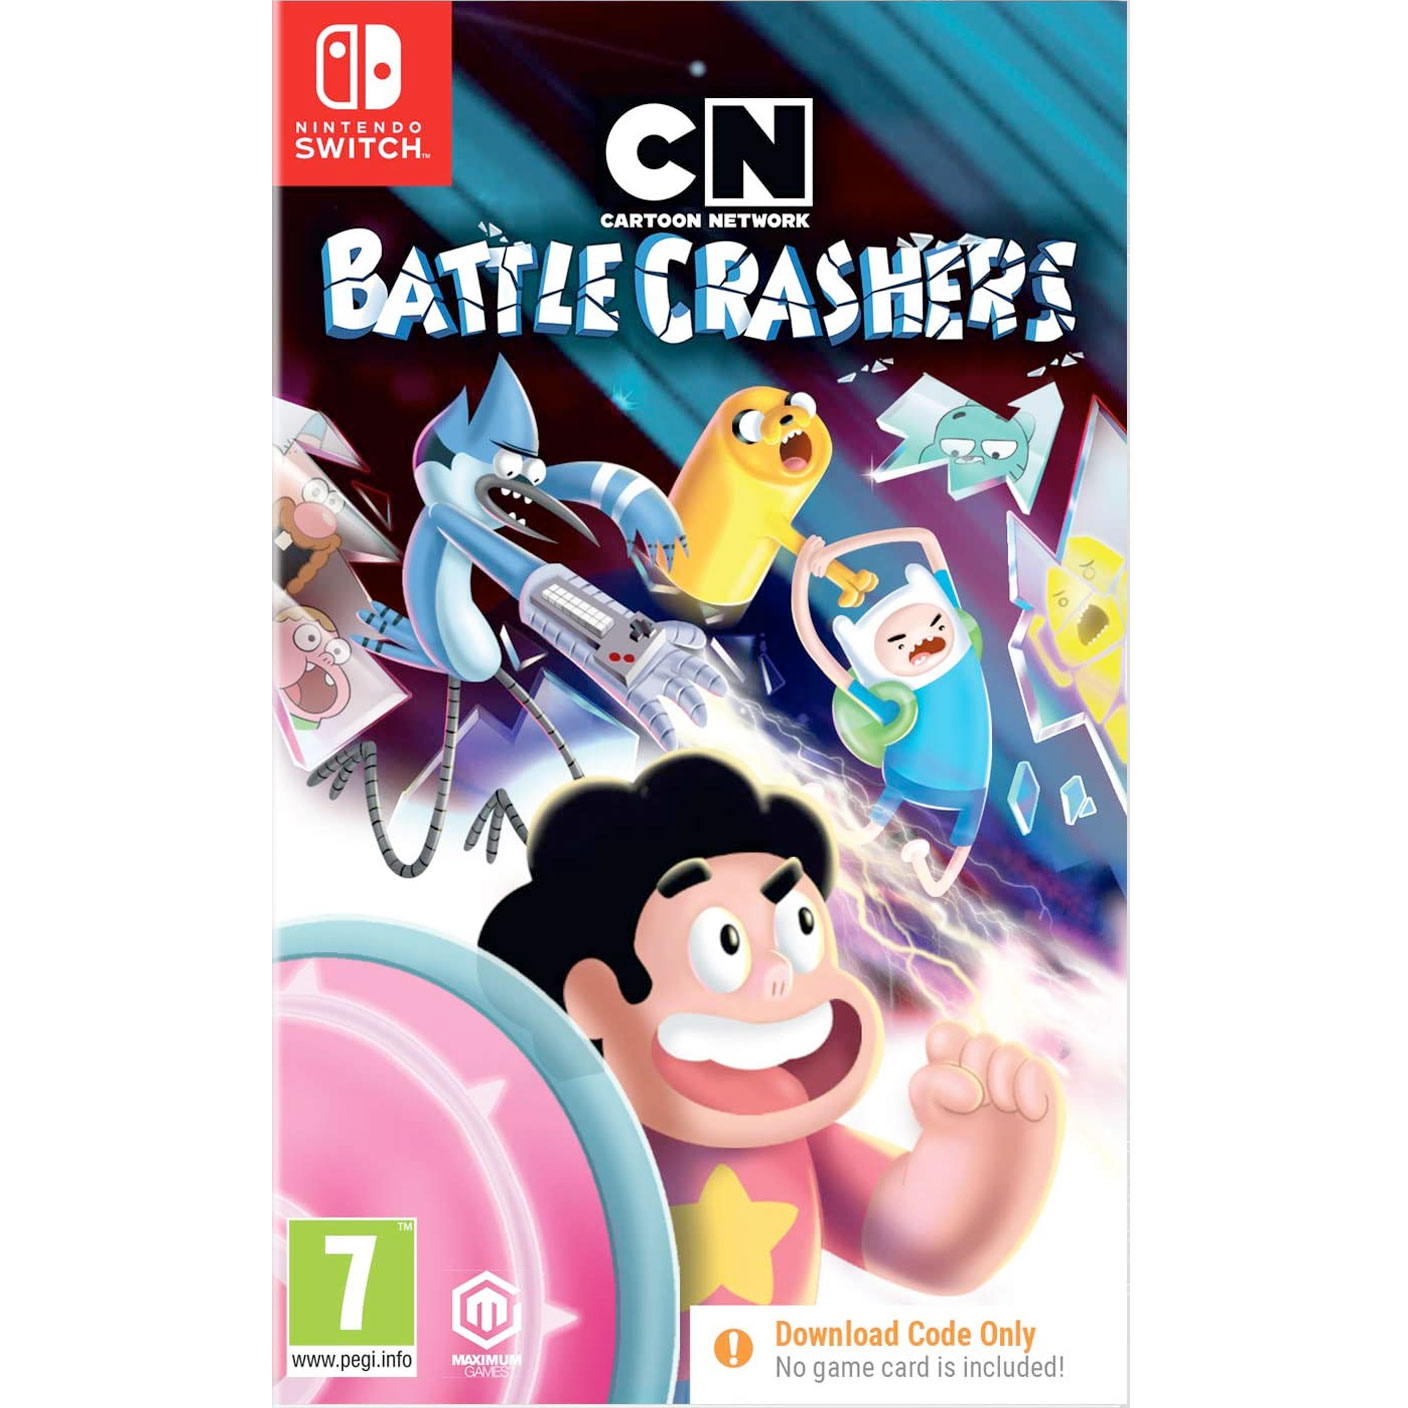 Cartoon Network Battle Crashers NINTENDO SWITCH New and Sealed